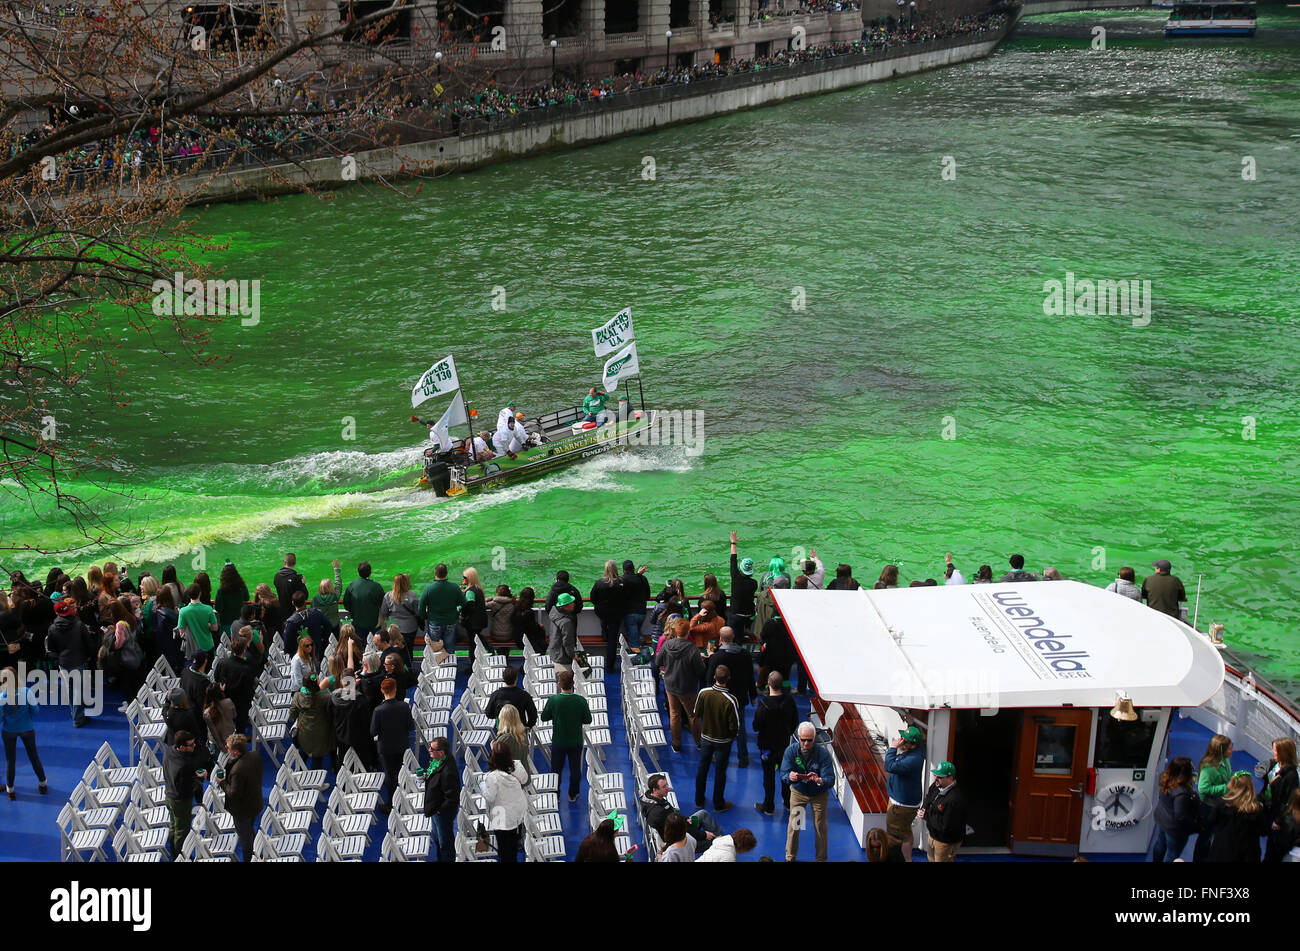 La rivière Chicago est teint en vert par les membres de l'union des plombiers en l'honneur de Saint Patrick's Day dans le centre-ville de Chicago, Illinois, ONU Banque D'Images